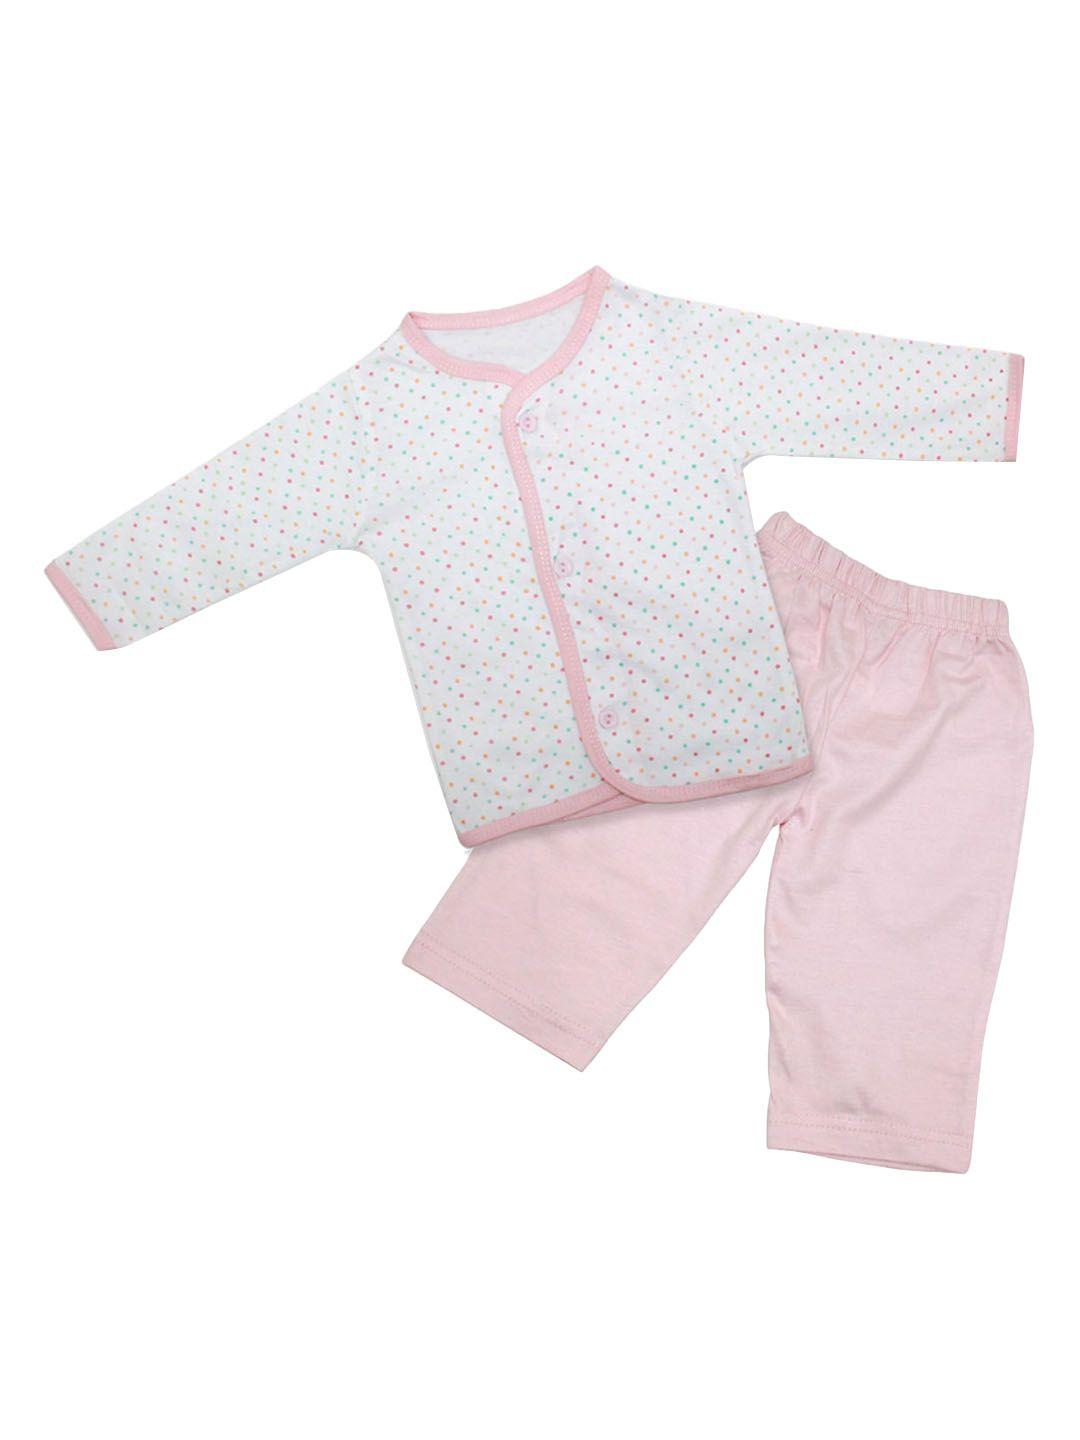 born babies unisex kids pink clothing set